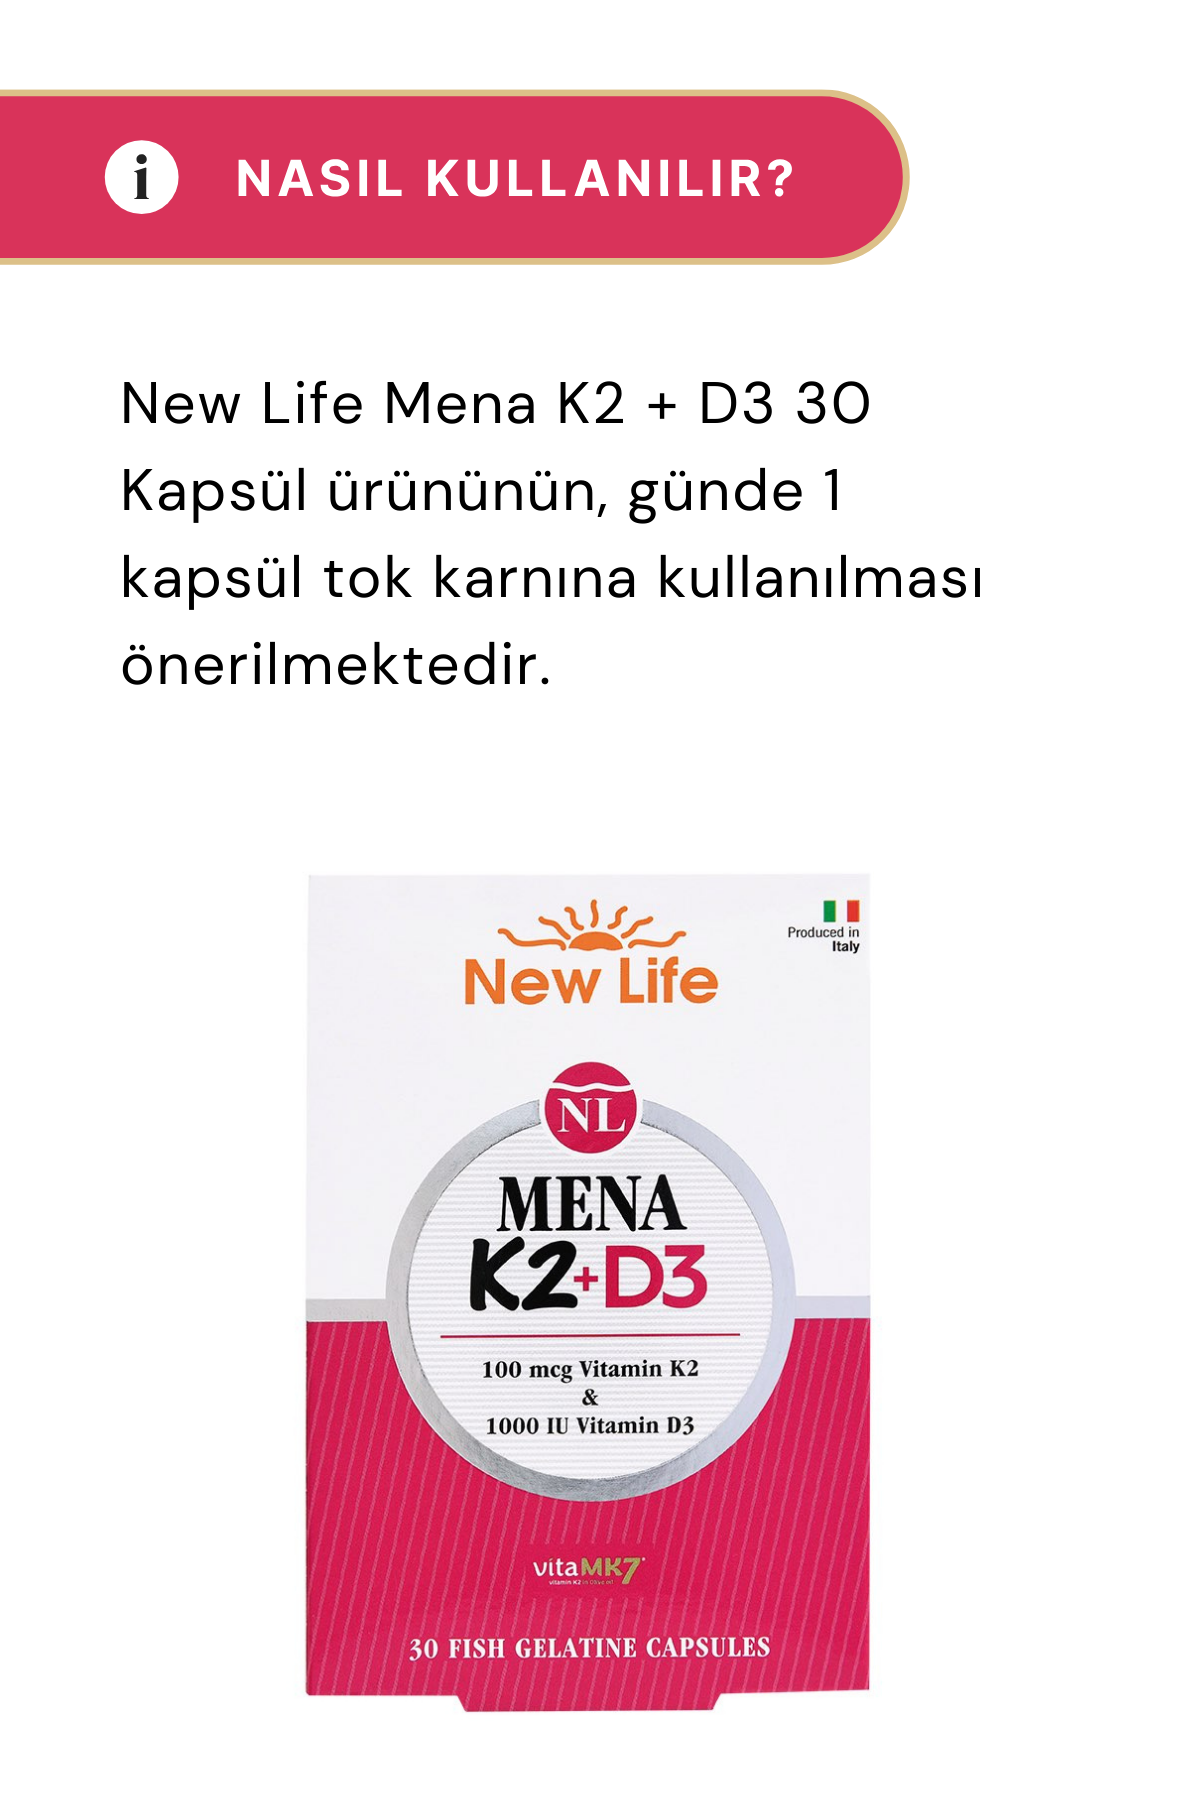 New Life Mena K2 + D3 30 Kapsül 4'lü Paket